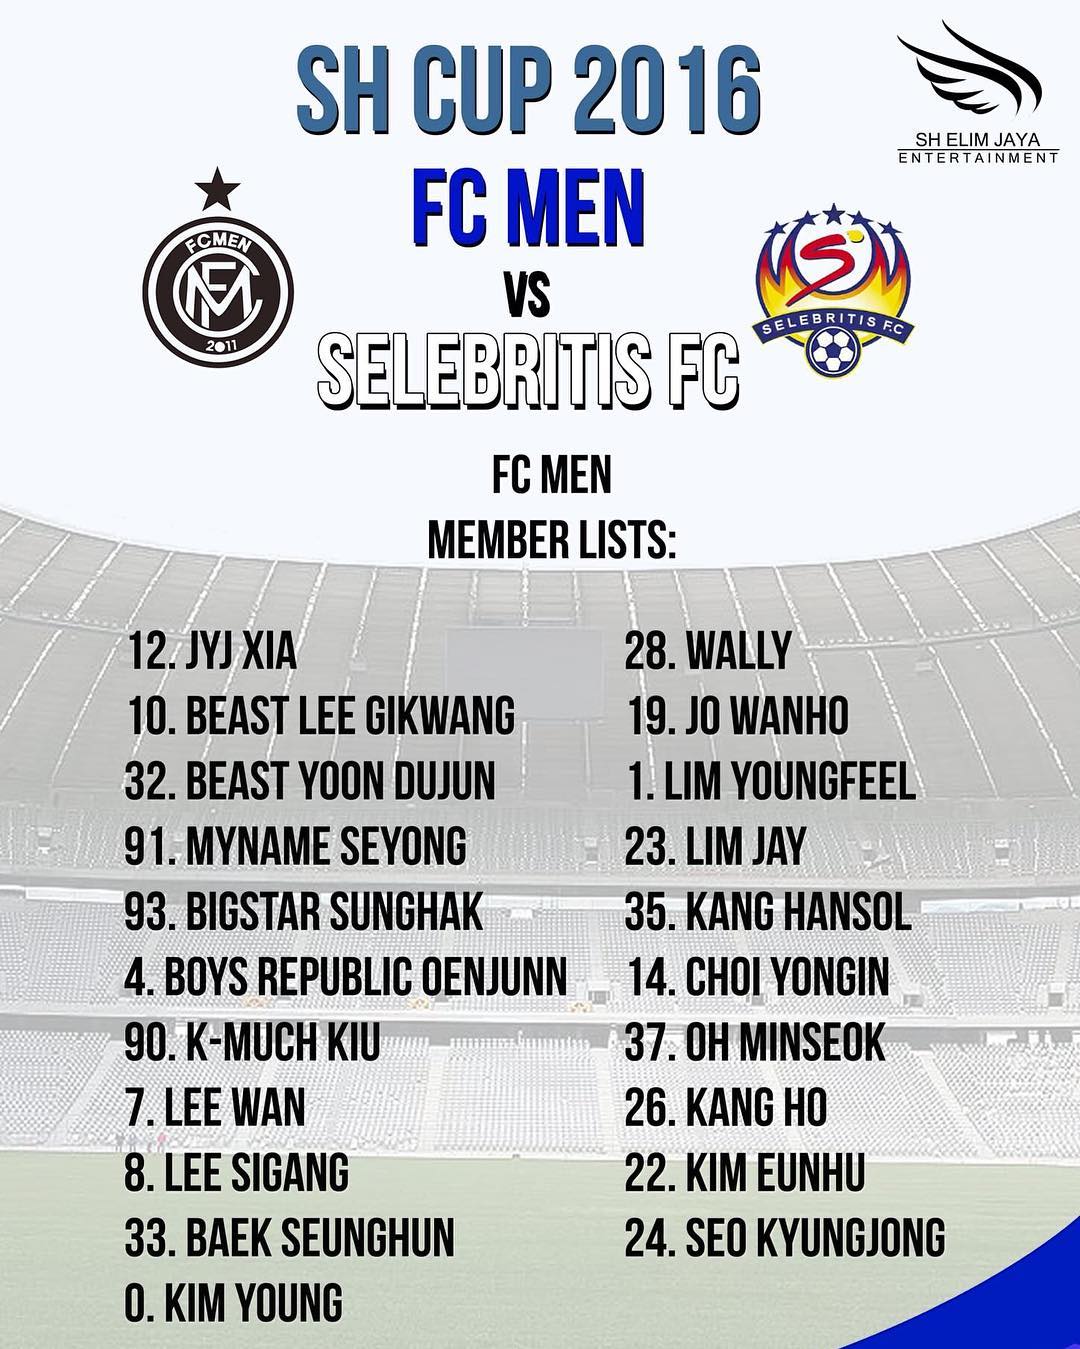 Daftar pemain FC MEN yang akan ikut bertanding di Indonesia. ©SH Entertainment